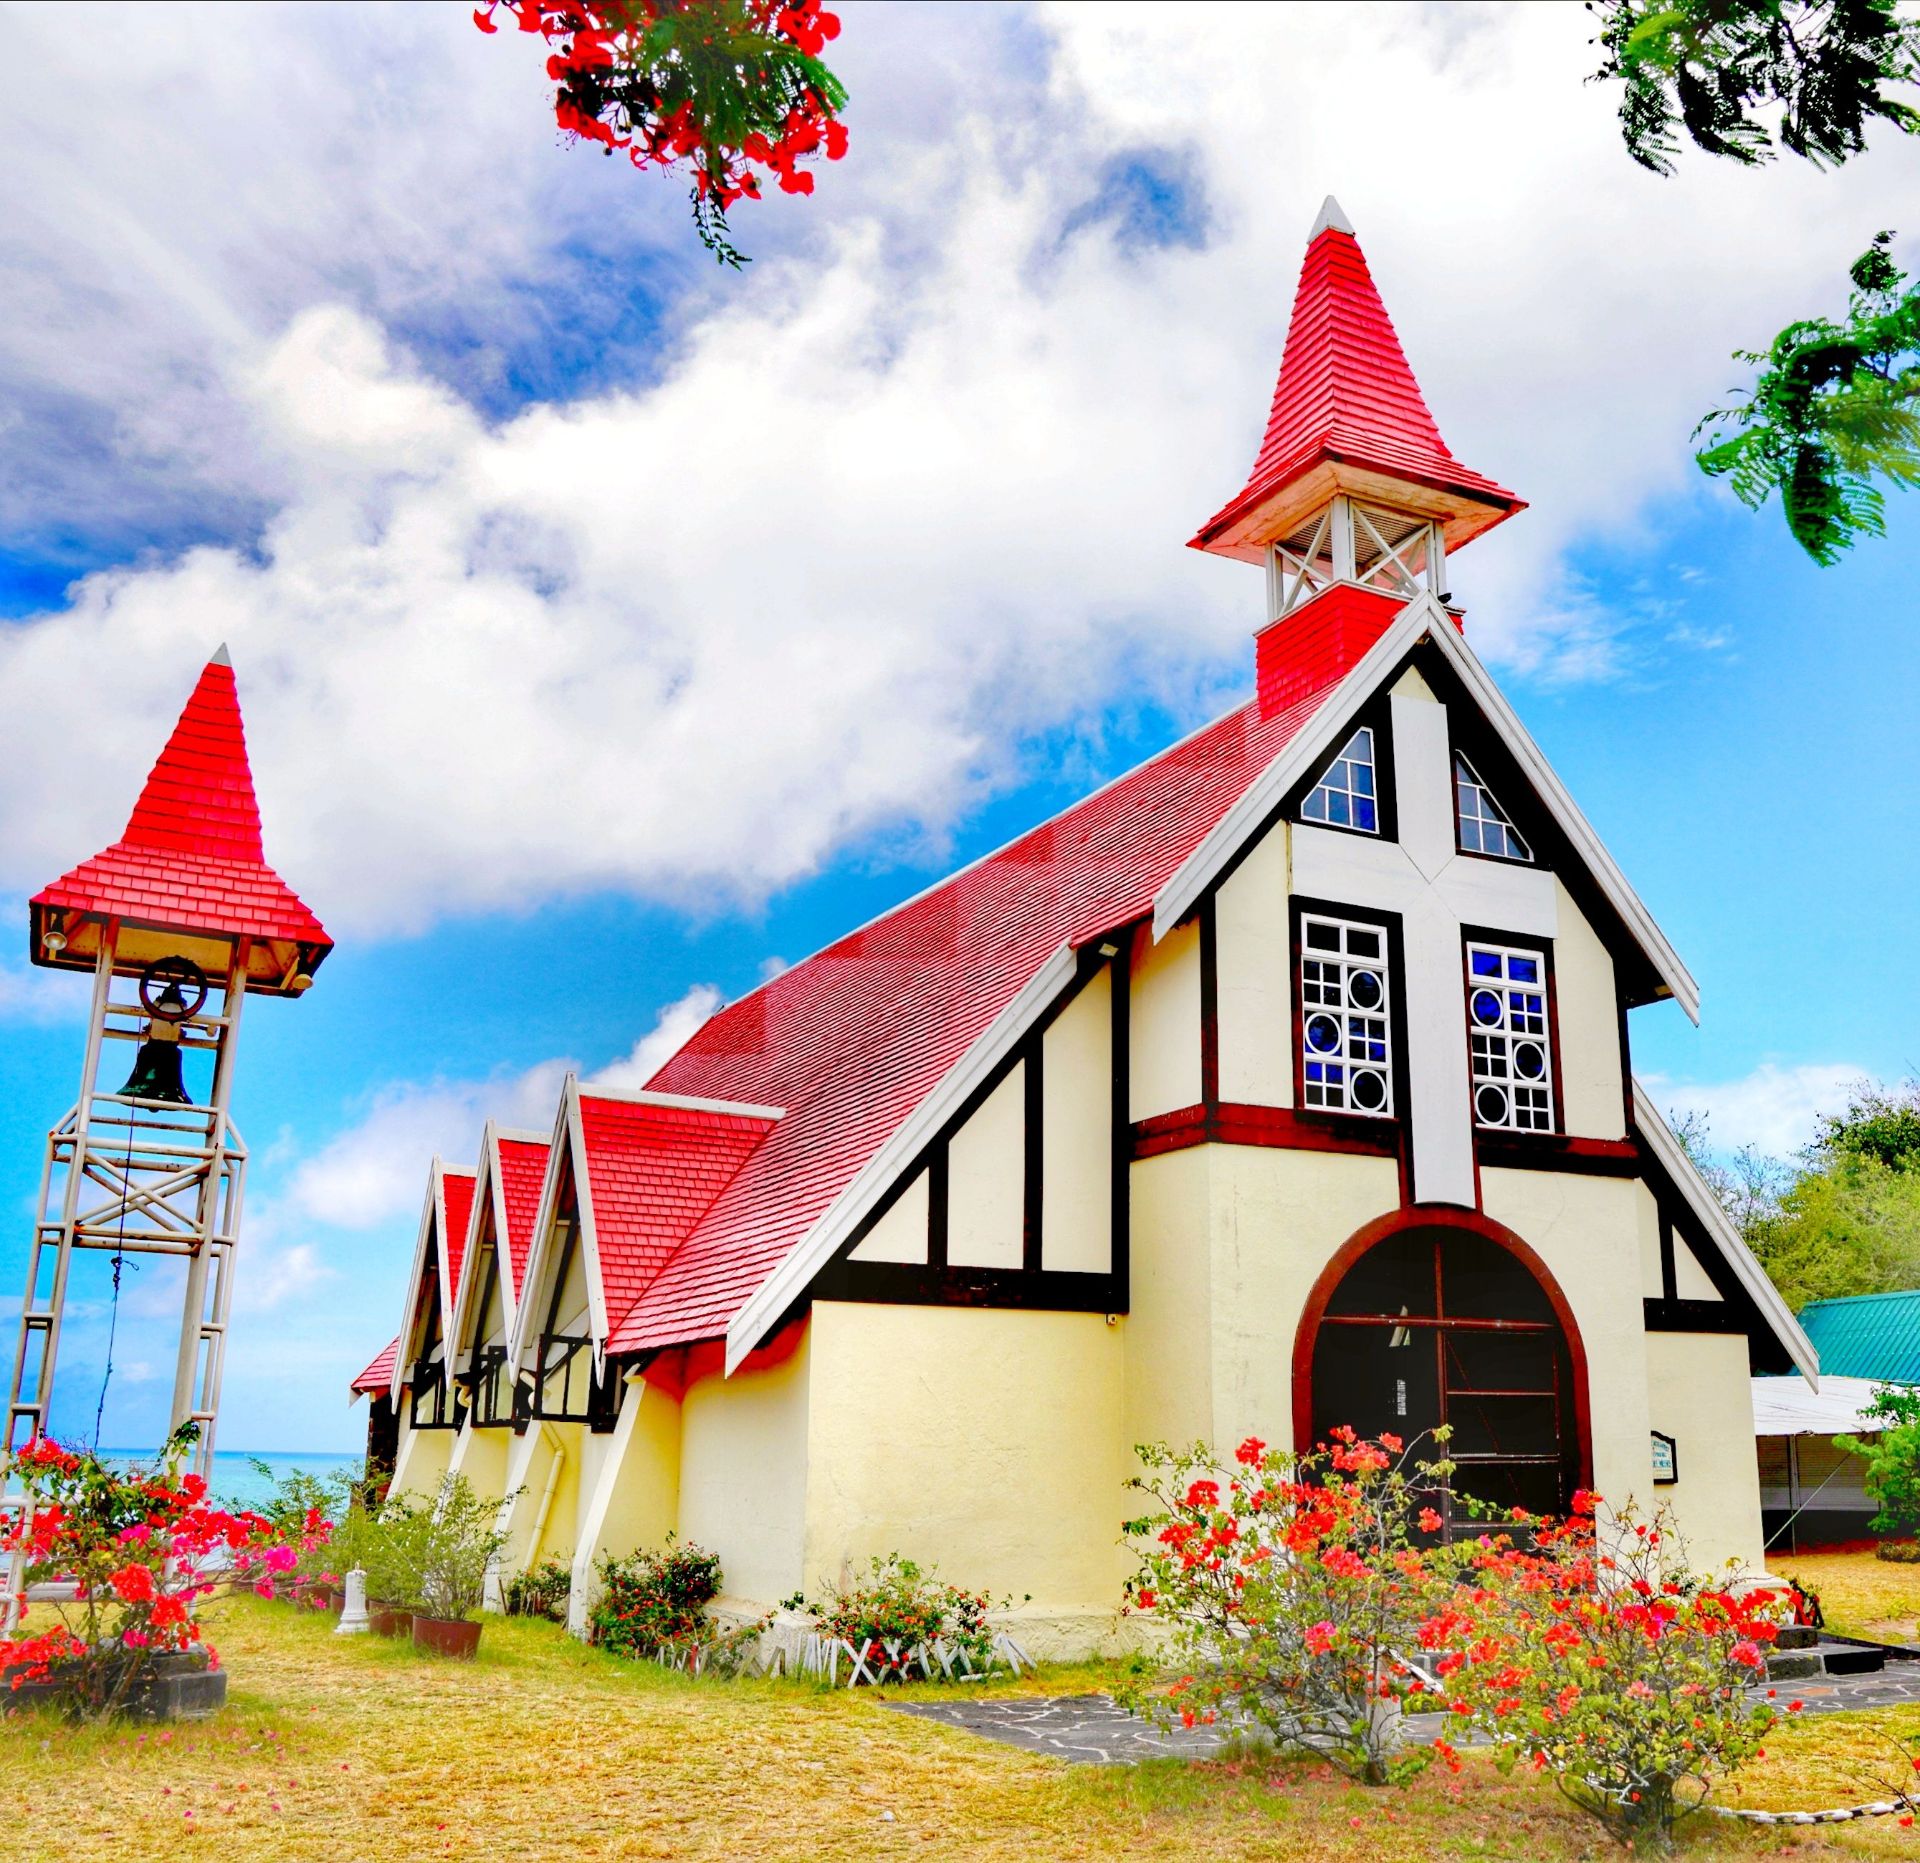 浪漫仙境的红顶教堂——香草四岛国巡航②          世上教堂万万千，帷有红顶不多见。只缘浮在蓝